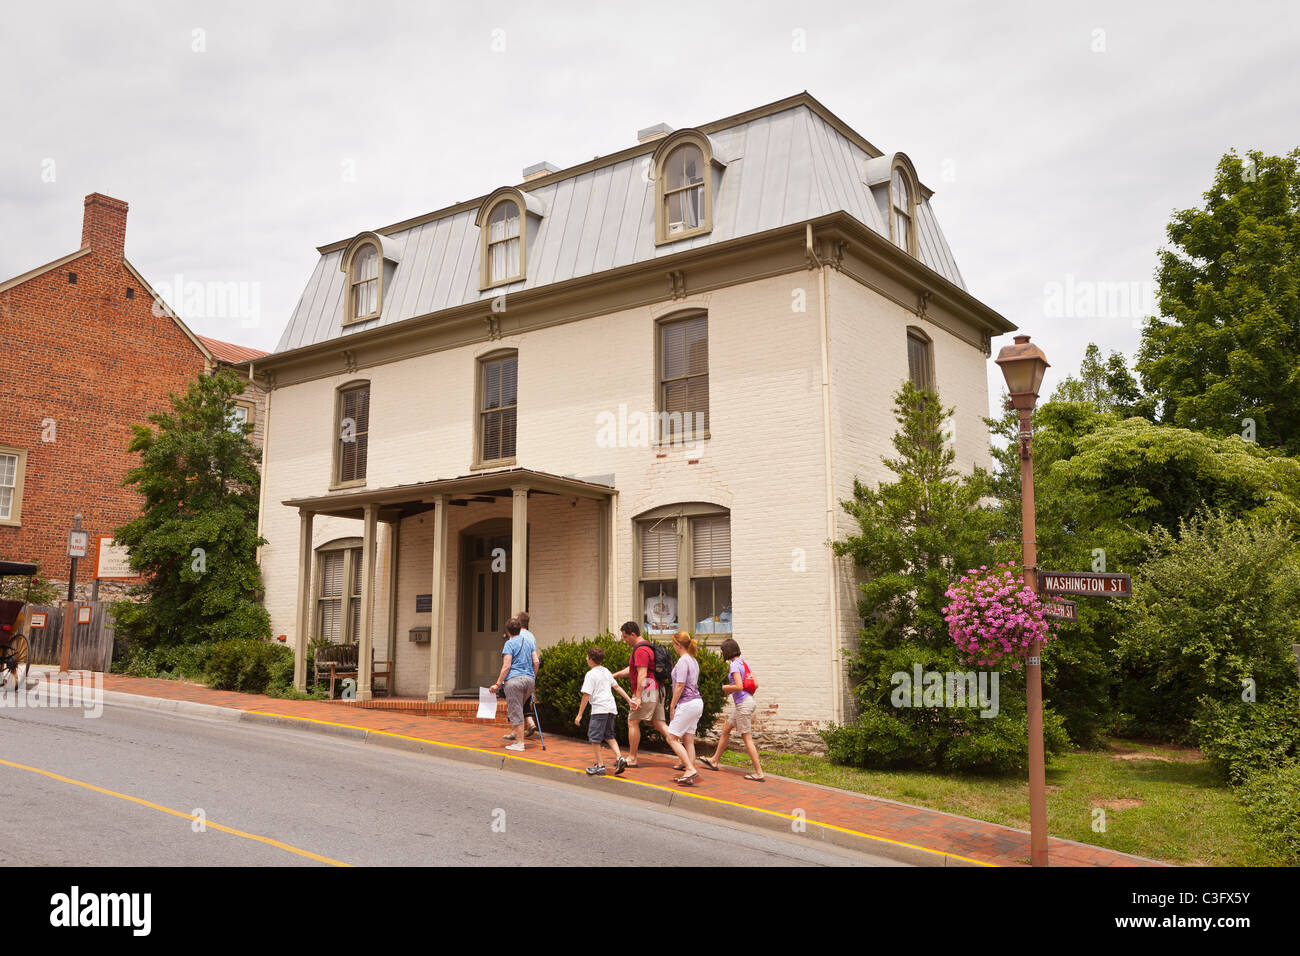 LEXINGTON, Virginia, USA - Davidson-Tucker House, construite en 1888, et des gens sur le trottoir. Banque D'Images